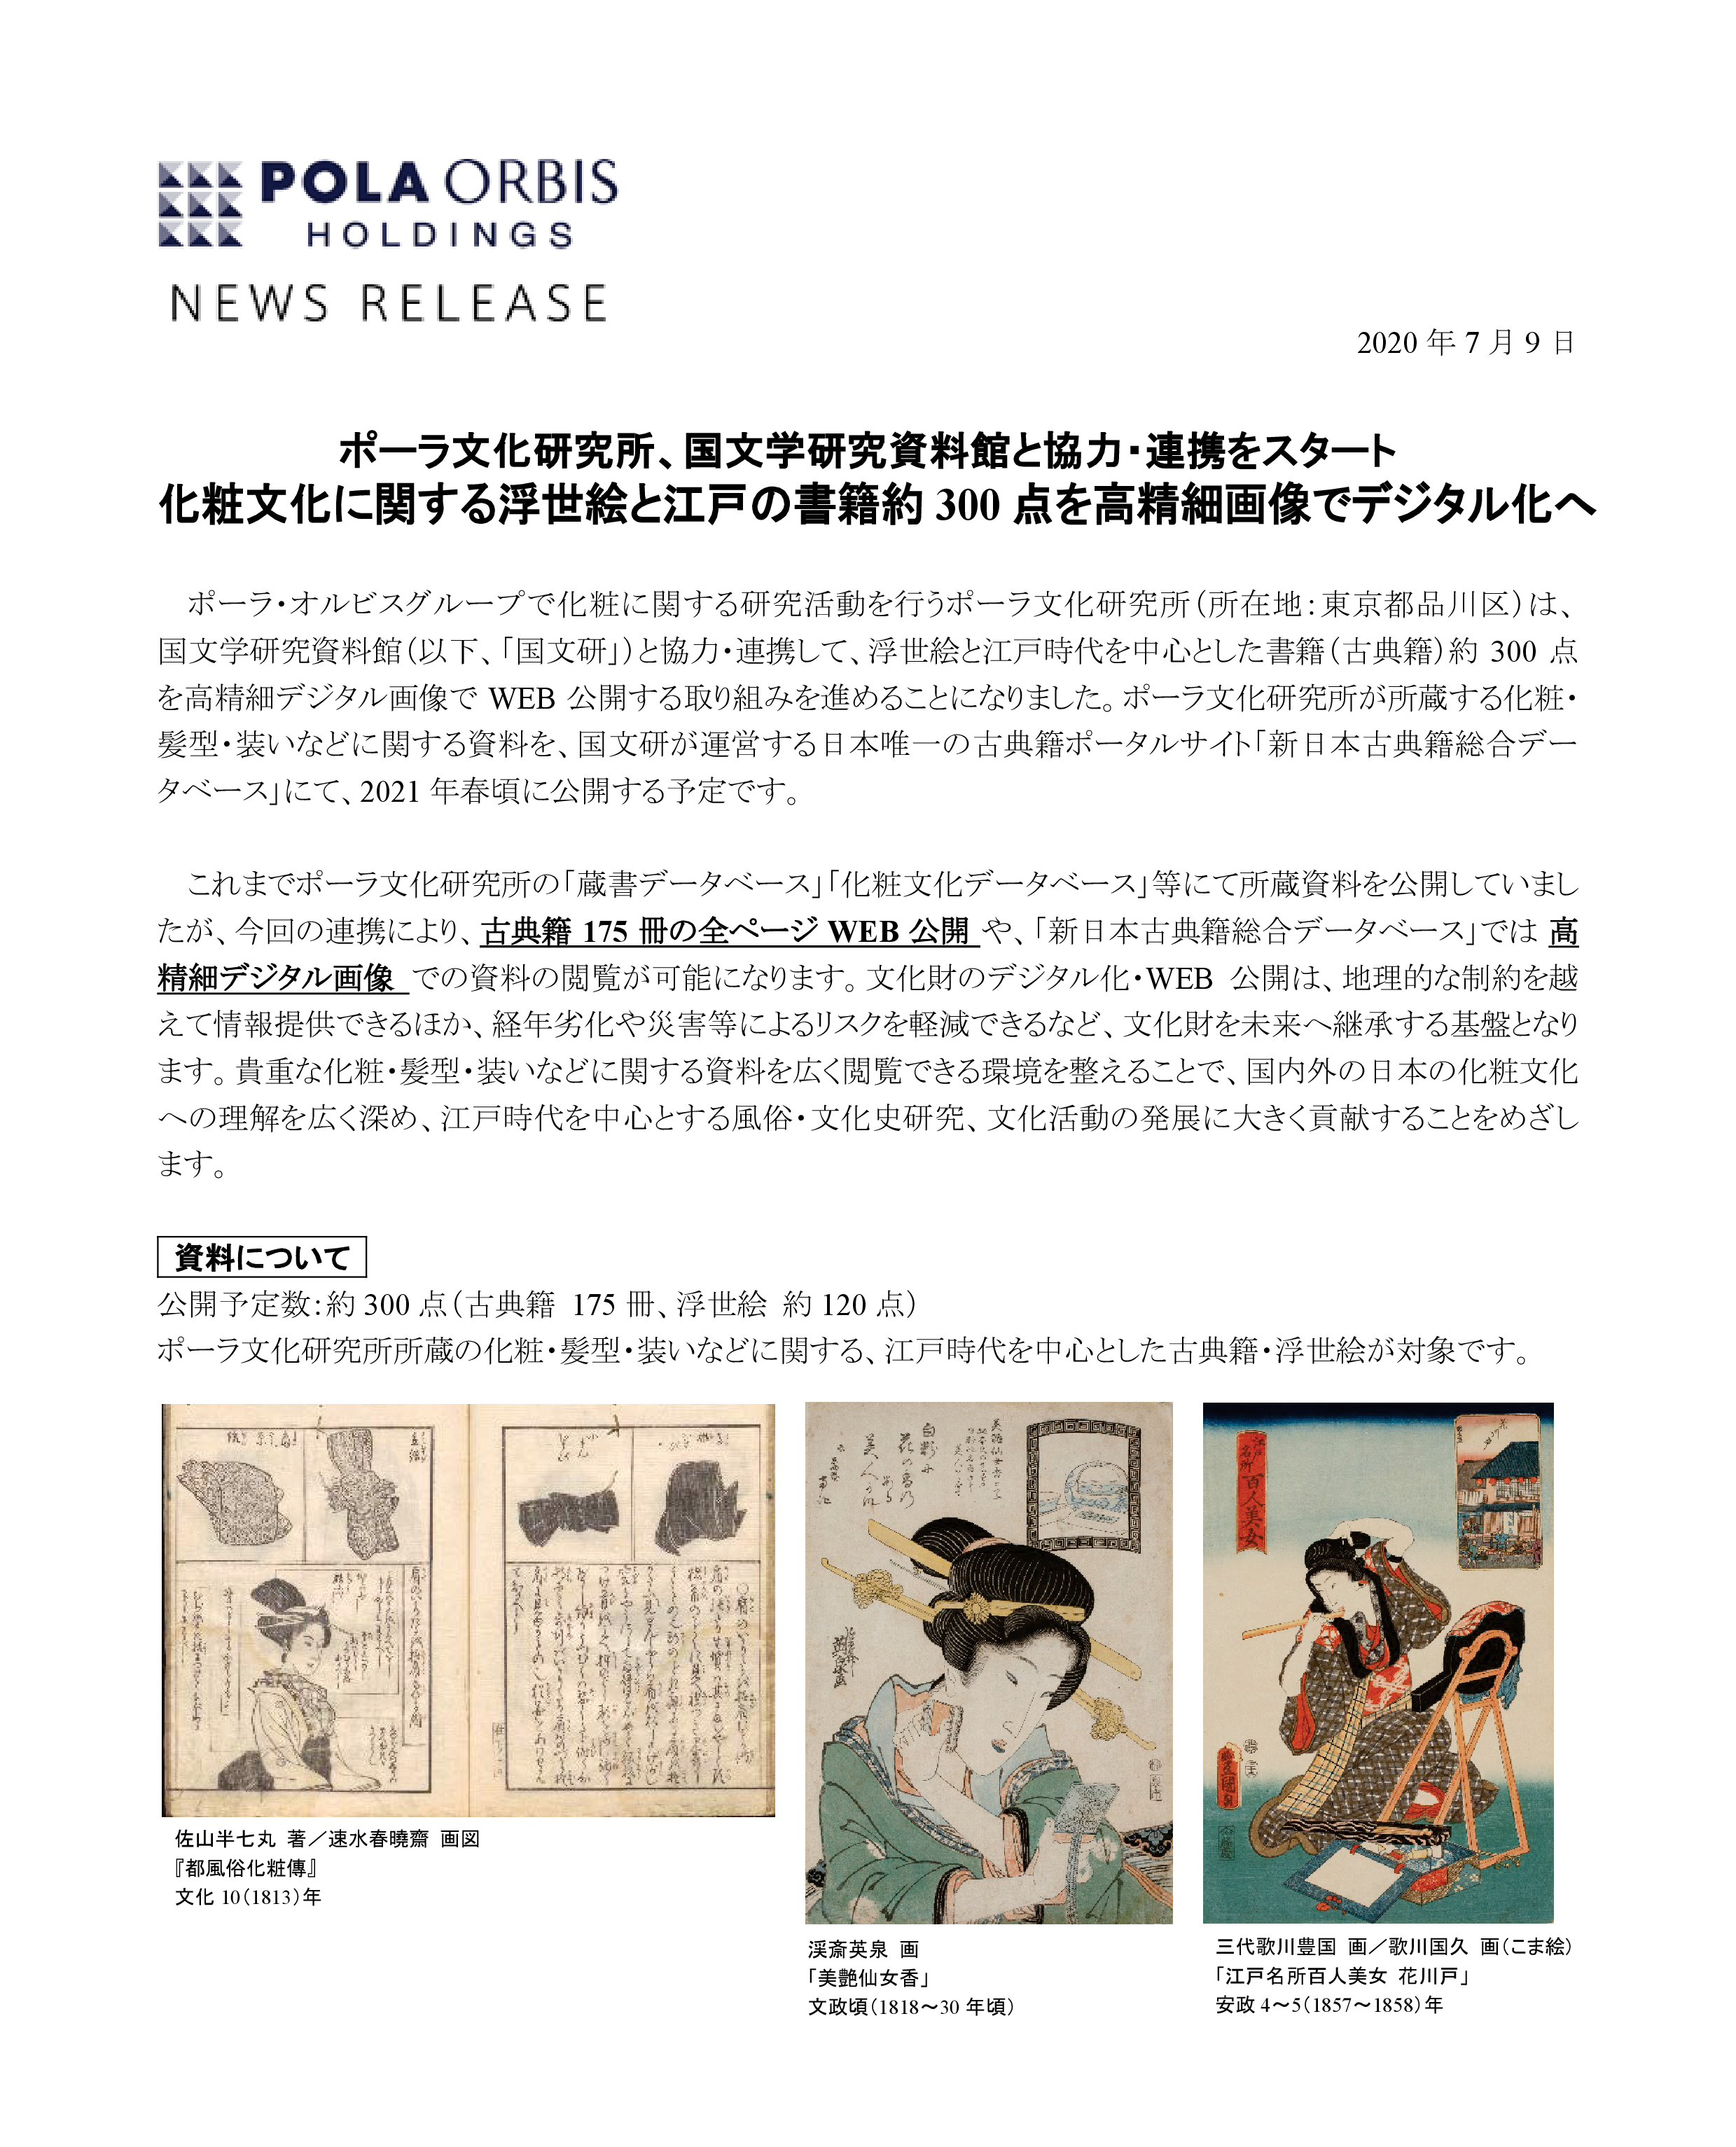 国文学研究資料館と協力・連携をスタート　化粧文化に関する浮世絵と江戸の書籍を高精細画像でデジタル化へ